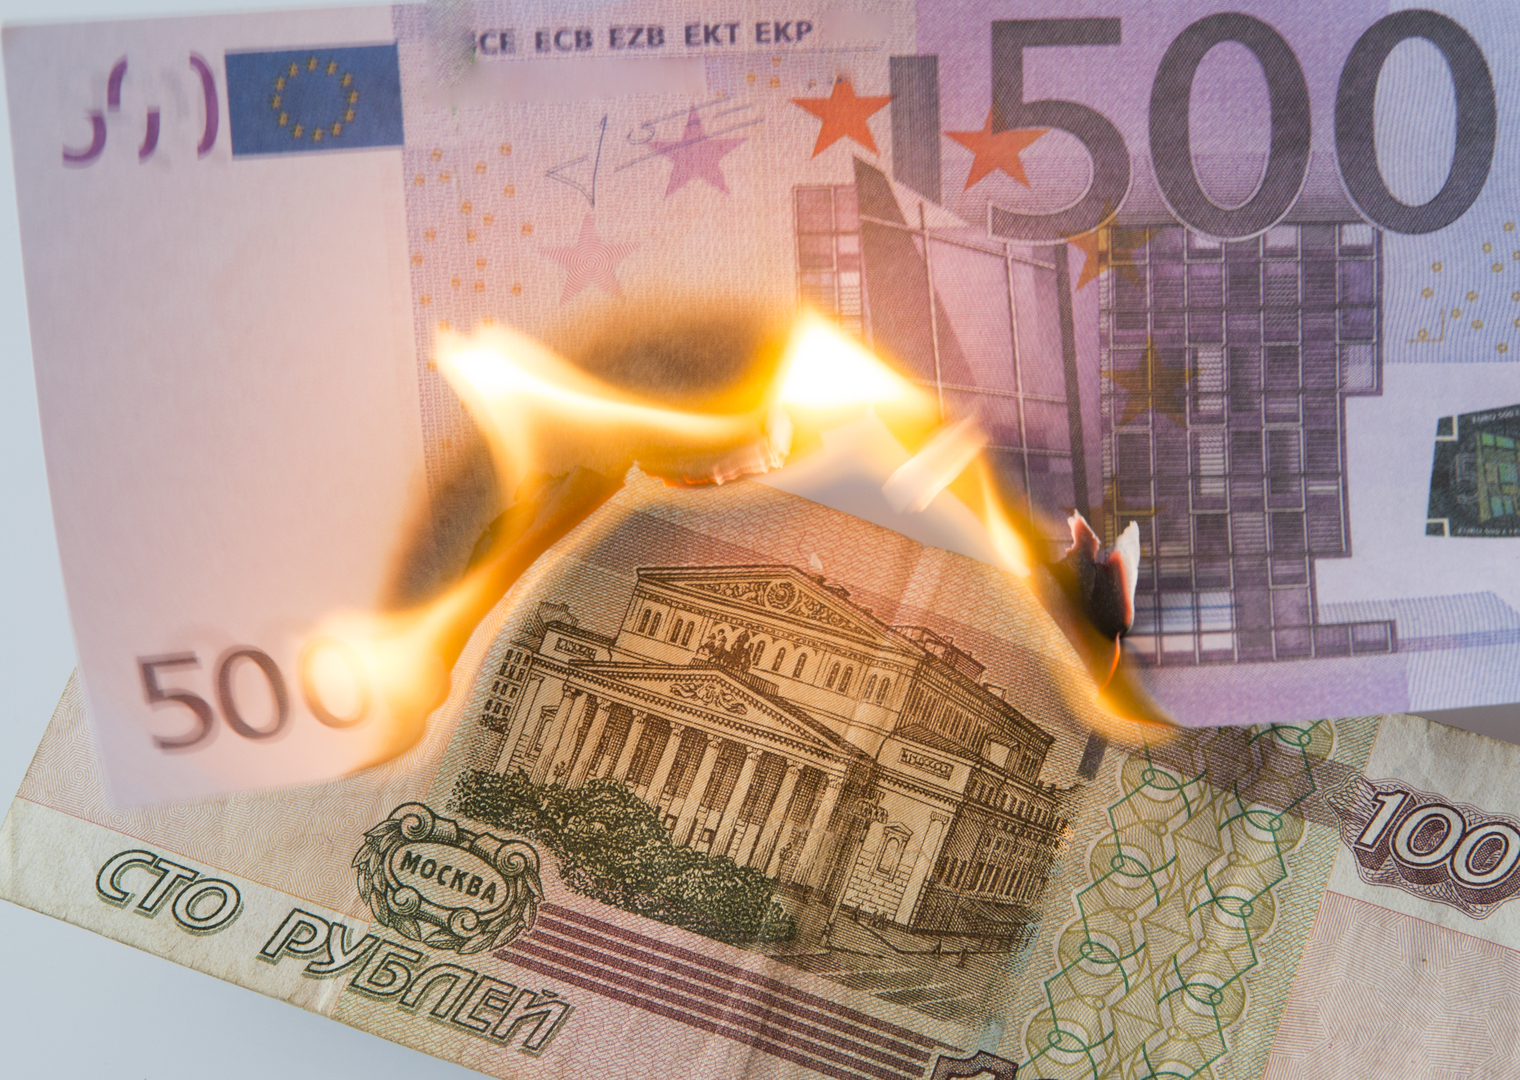 بعد الدولار.. اليورو يهوي أمام الروبل الروسي إلى أدنى مستوى في 4 أشهر